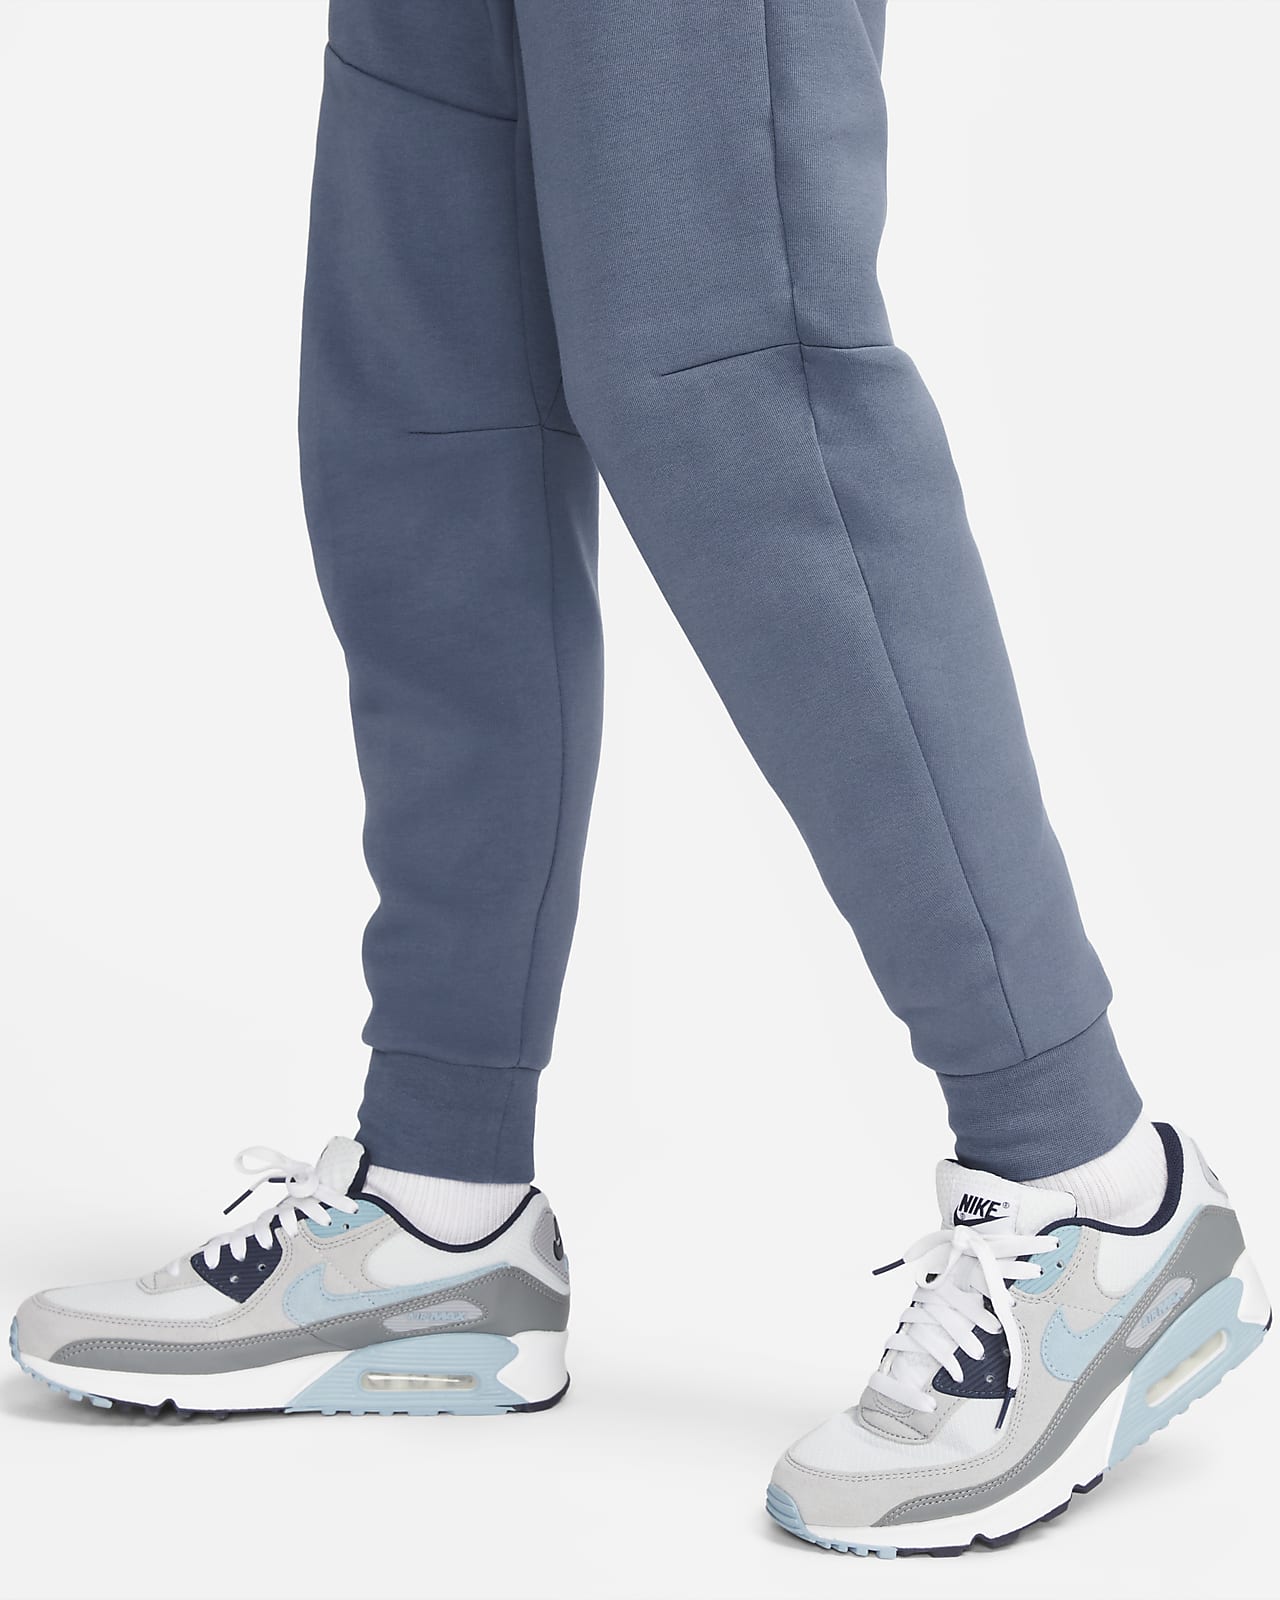 NIKE Sportswear Tech Fleece Printed Men Grey Track Pants - Buy